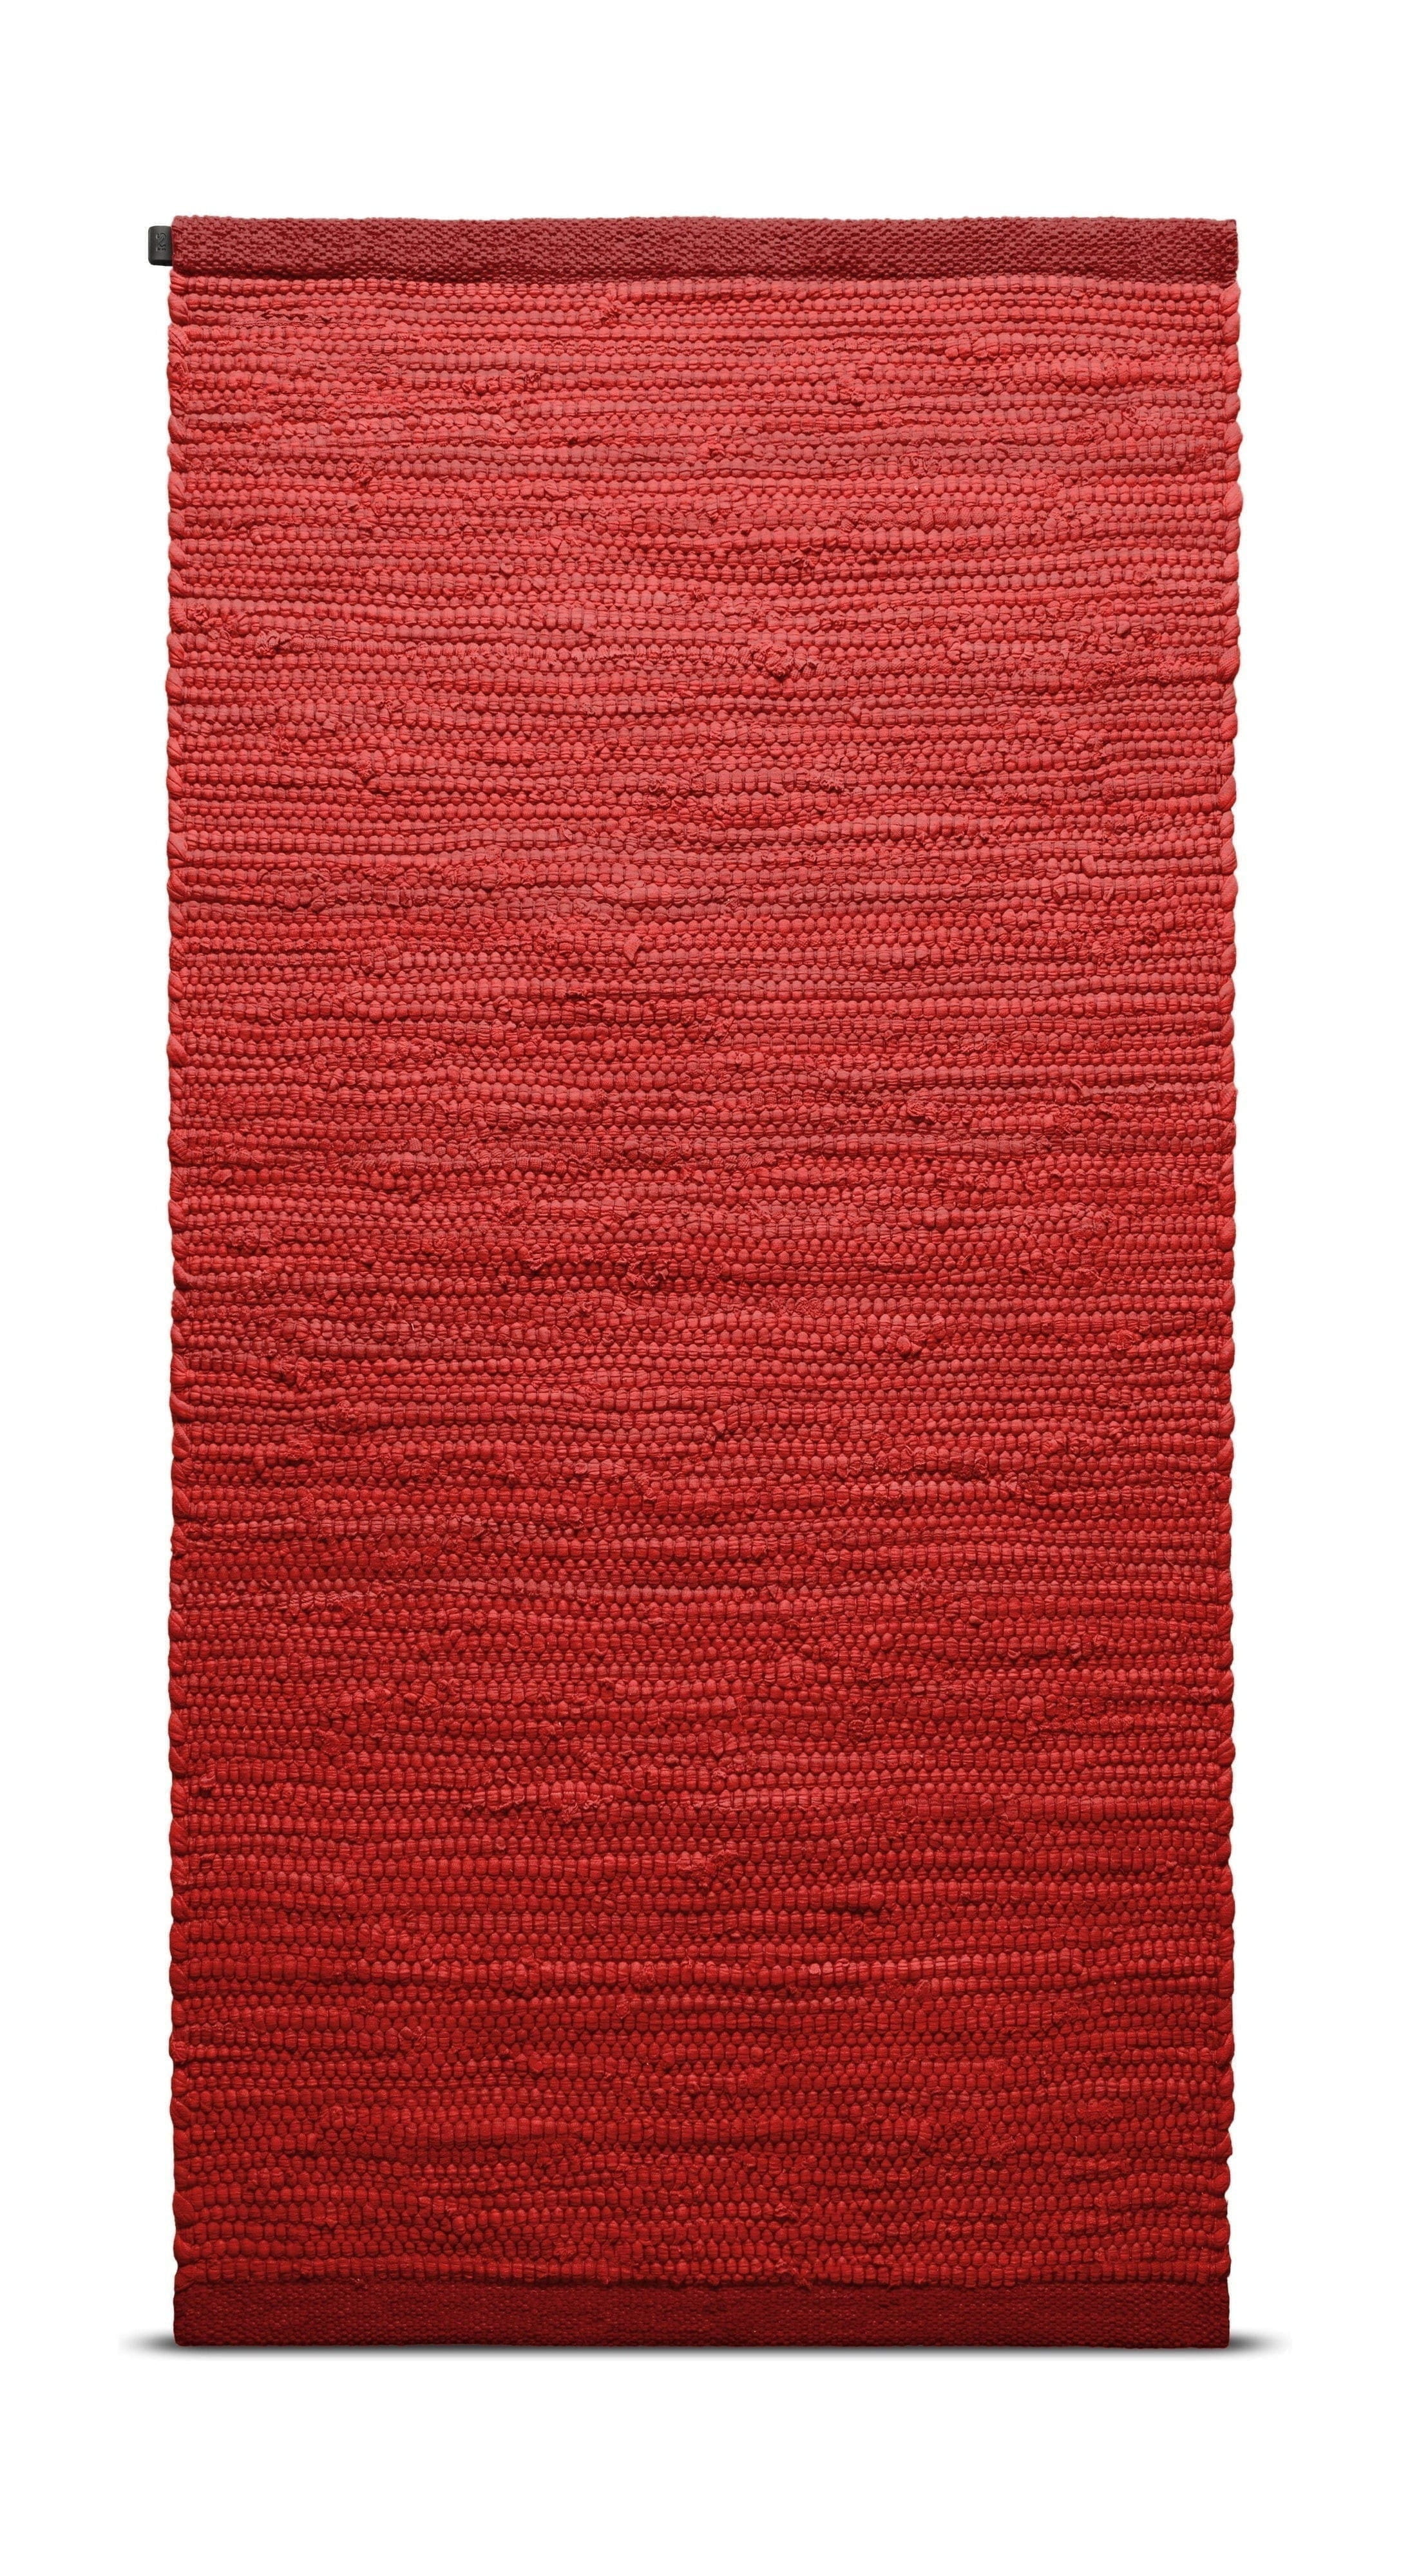 Rug Solid Katoenen tapijt 65 x 135 cm, aardbei